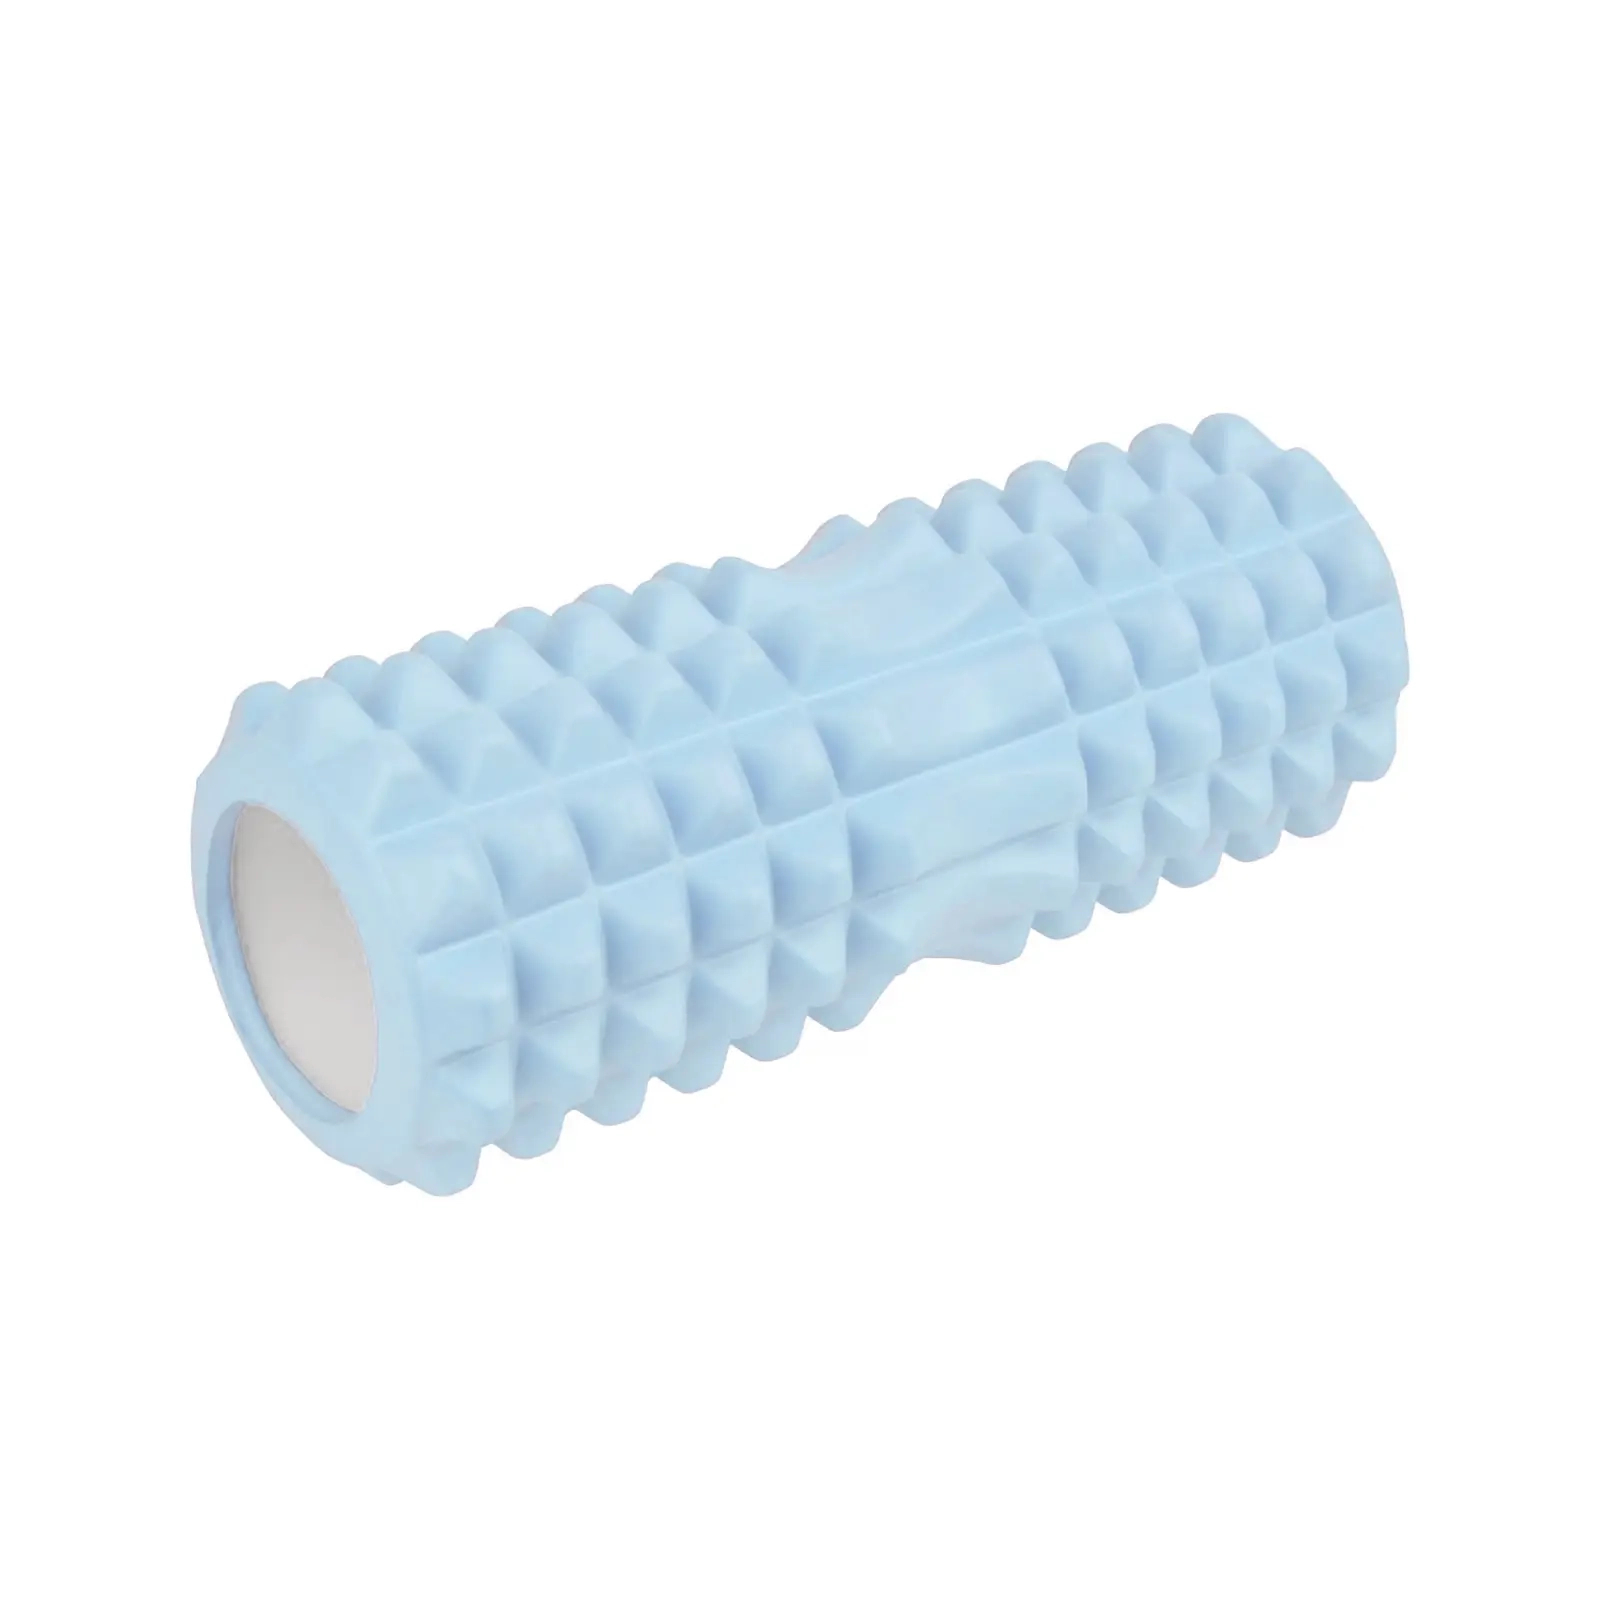 Масажный ролик U-Powex UP_1010 EVA foam roller 33x14см Type 2 Purpl (UP_1010_T2_Purple)